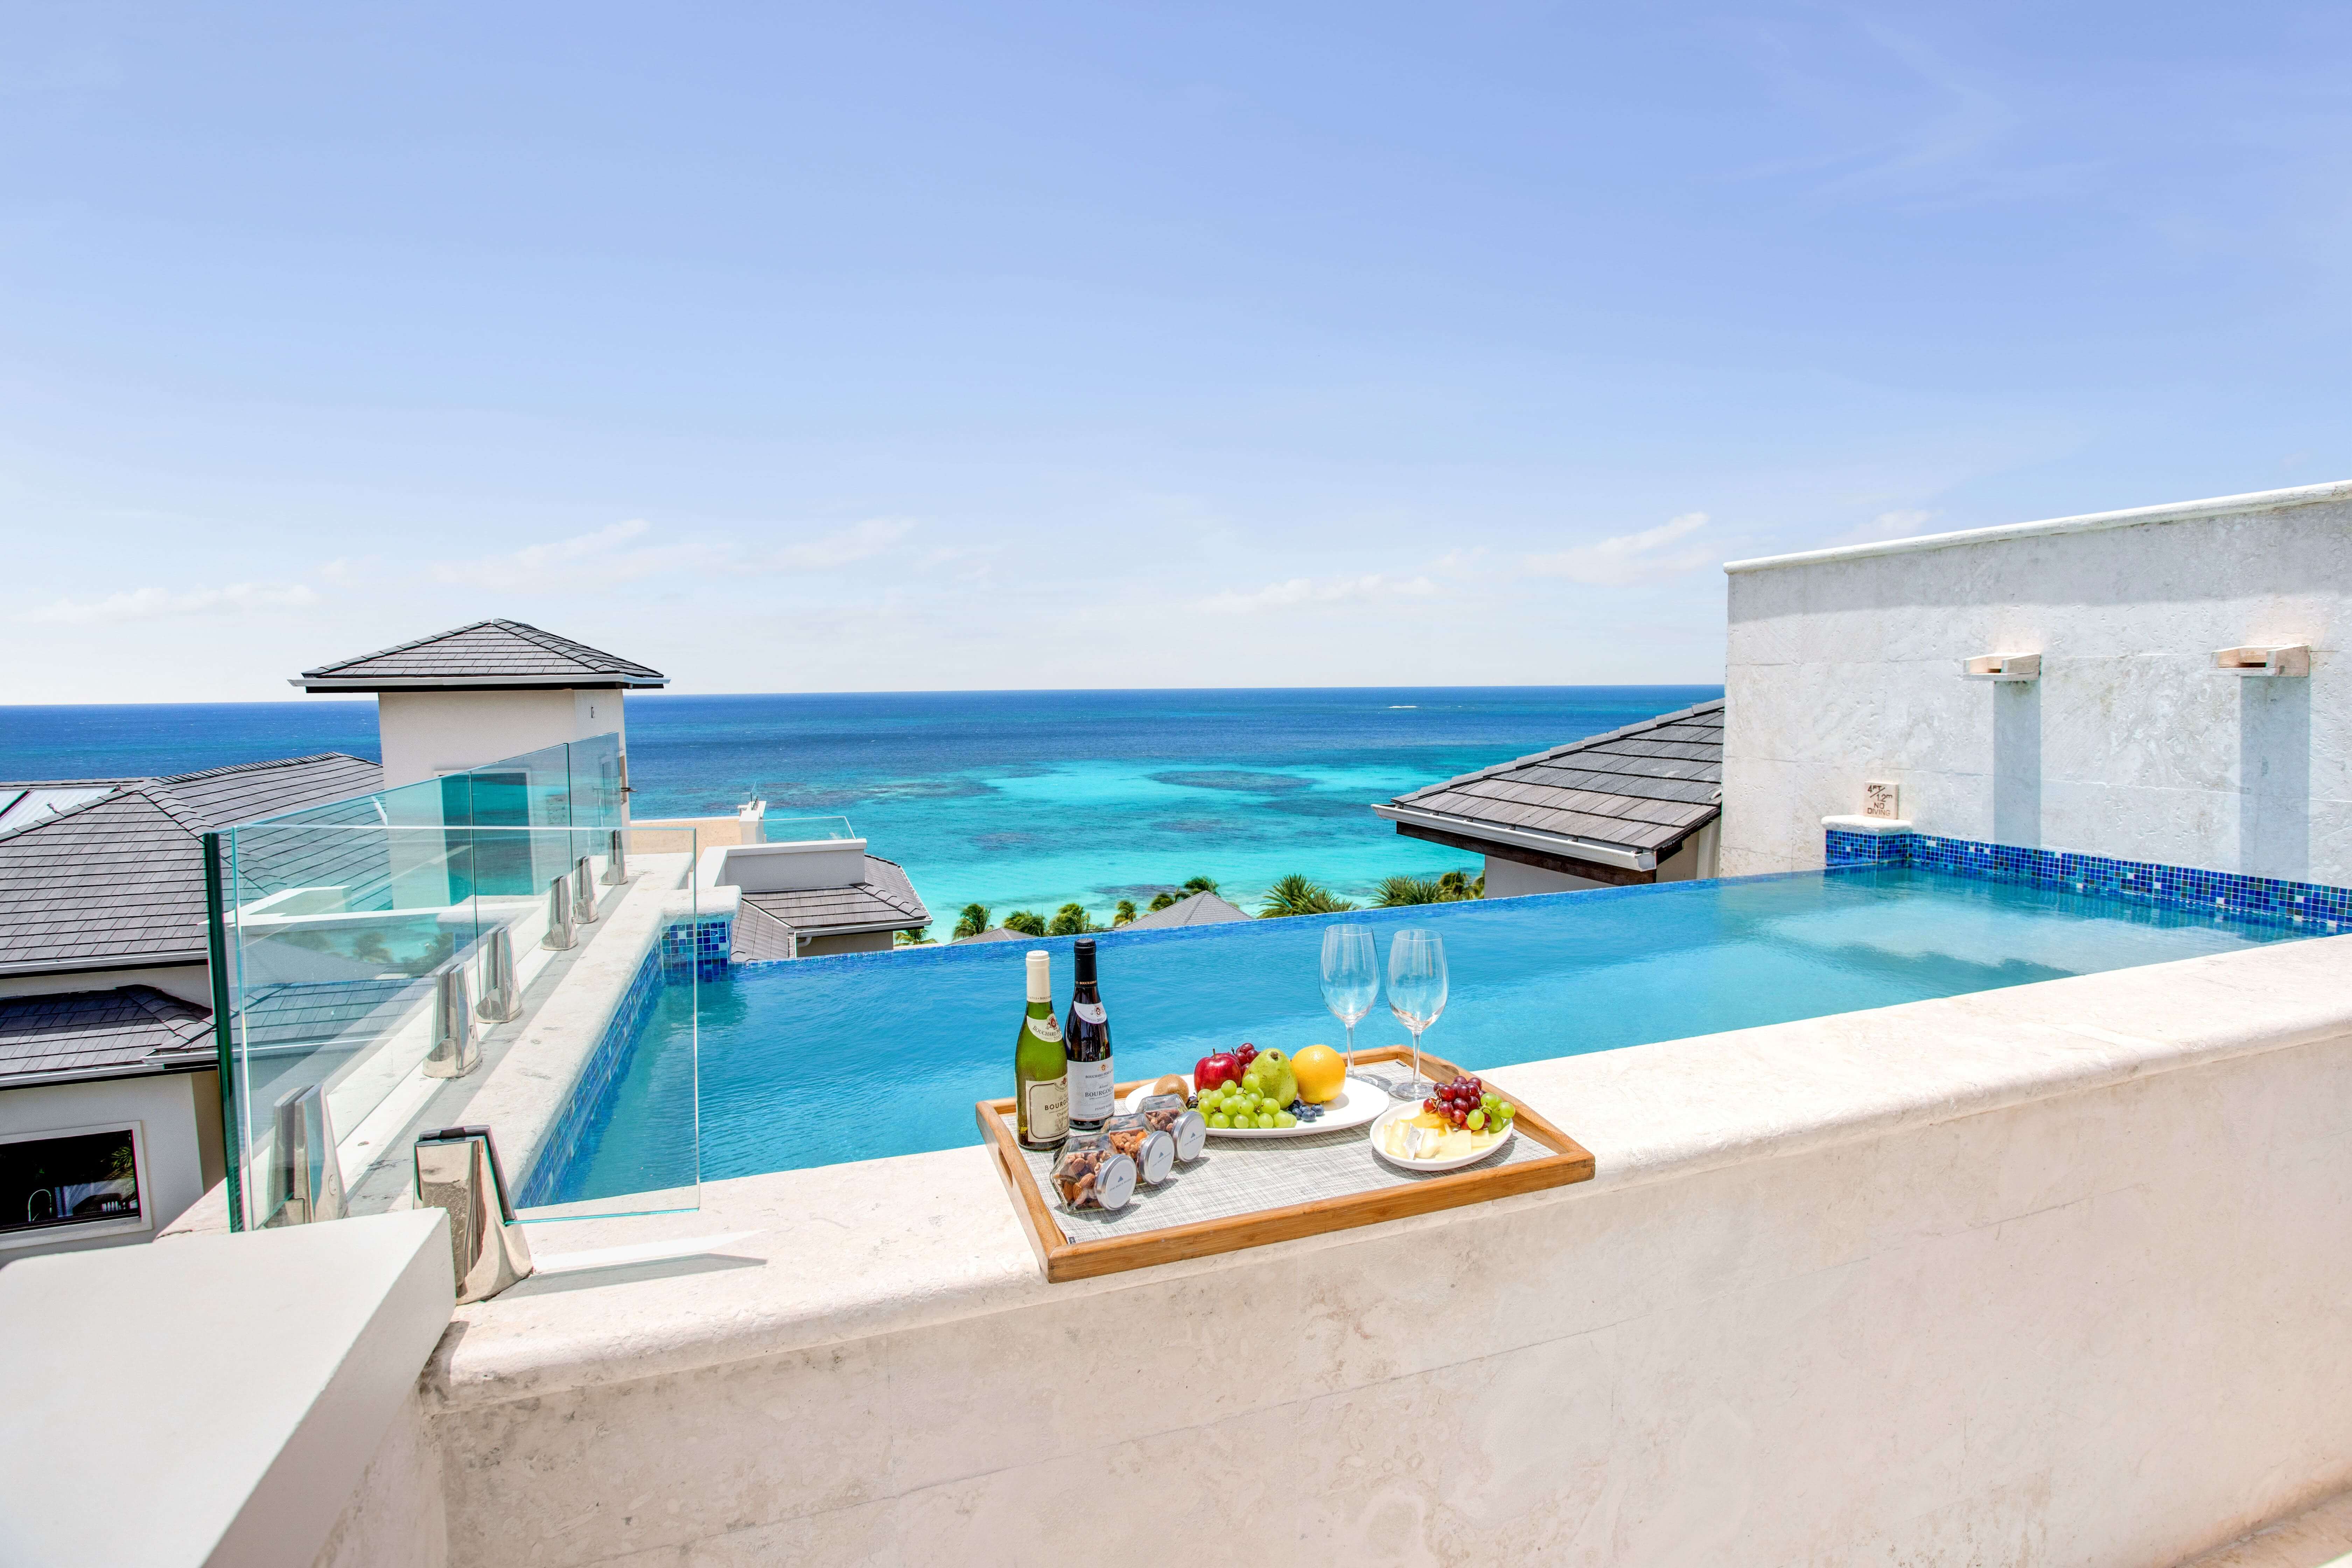 Pool on balcony overlooking the ocean